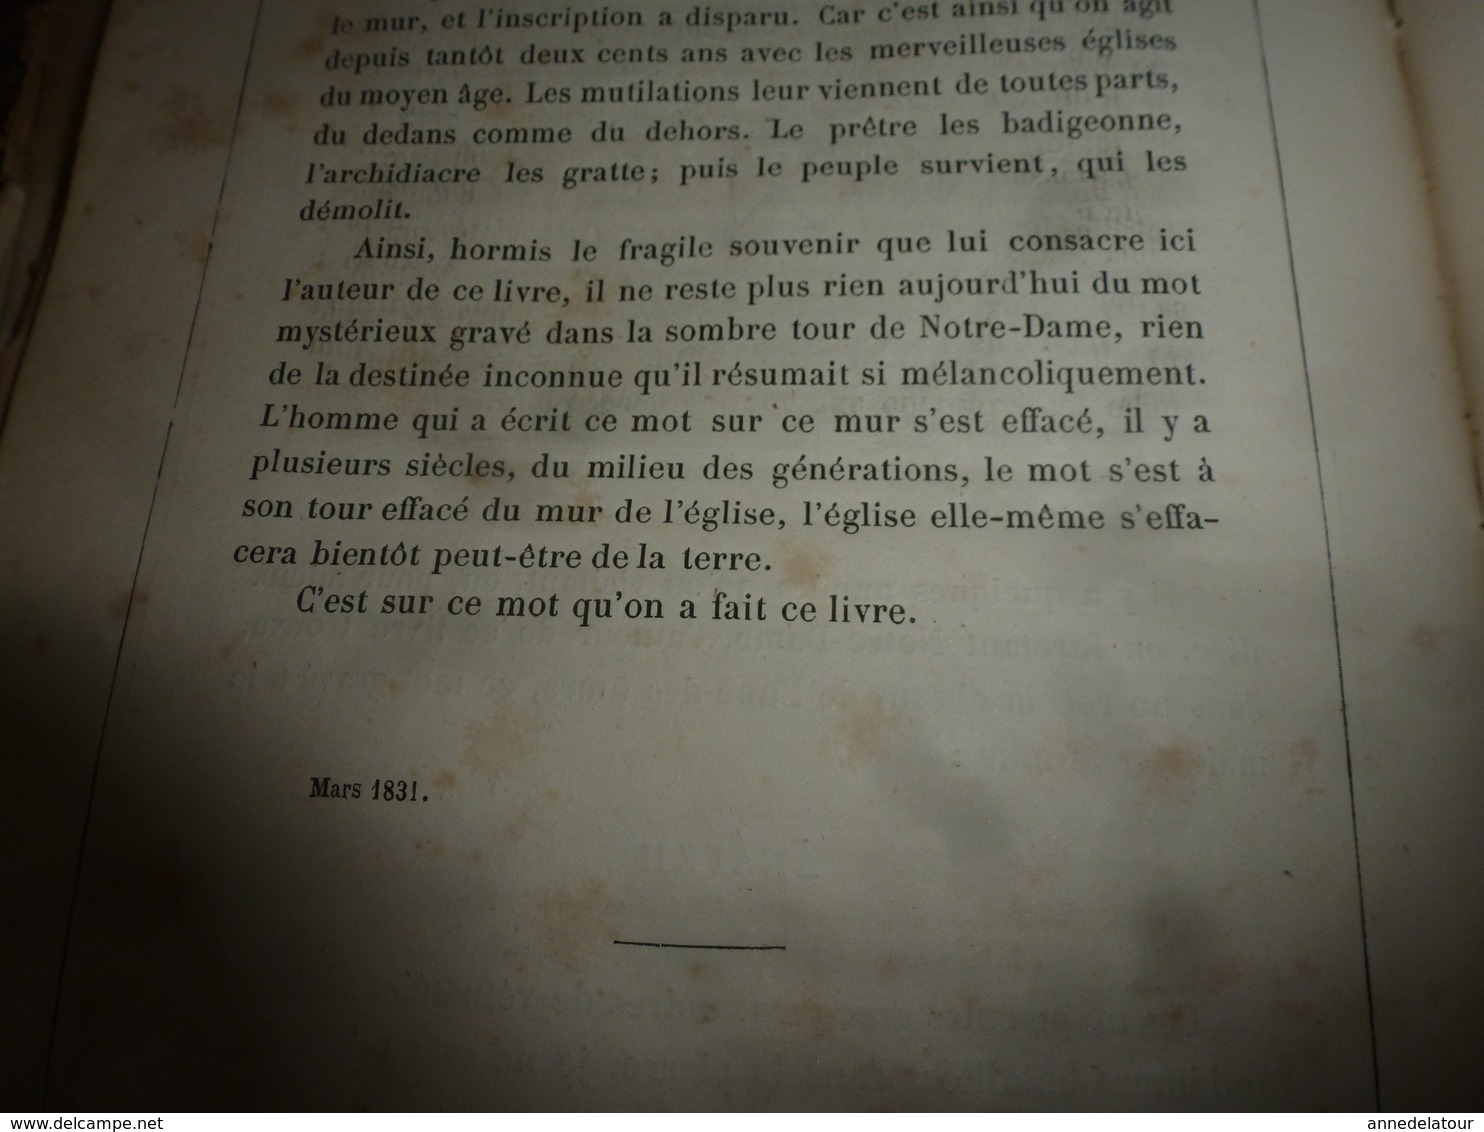 18?? NOTRE DAME DE PARIS de Victor Hugo (nombr. gravures - imprimerie J. Claye -  A. Quantin et Cie , rue St- Benoit